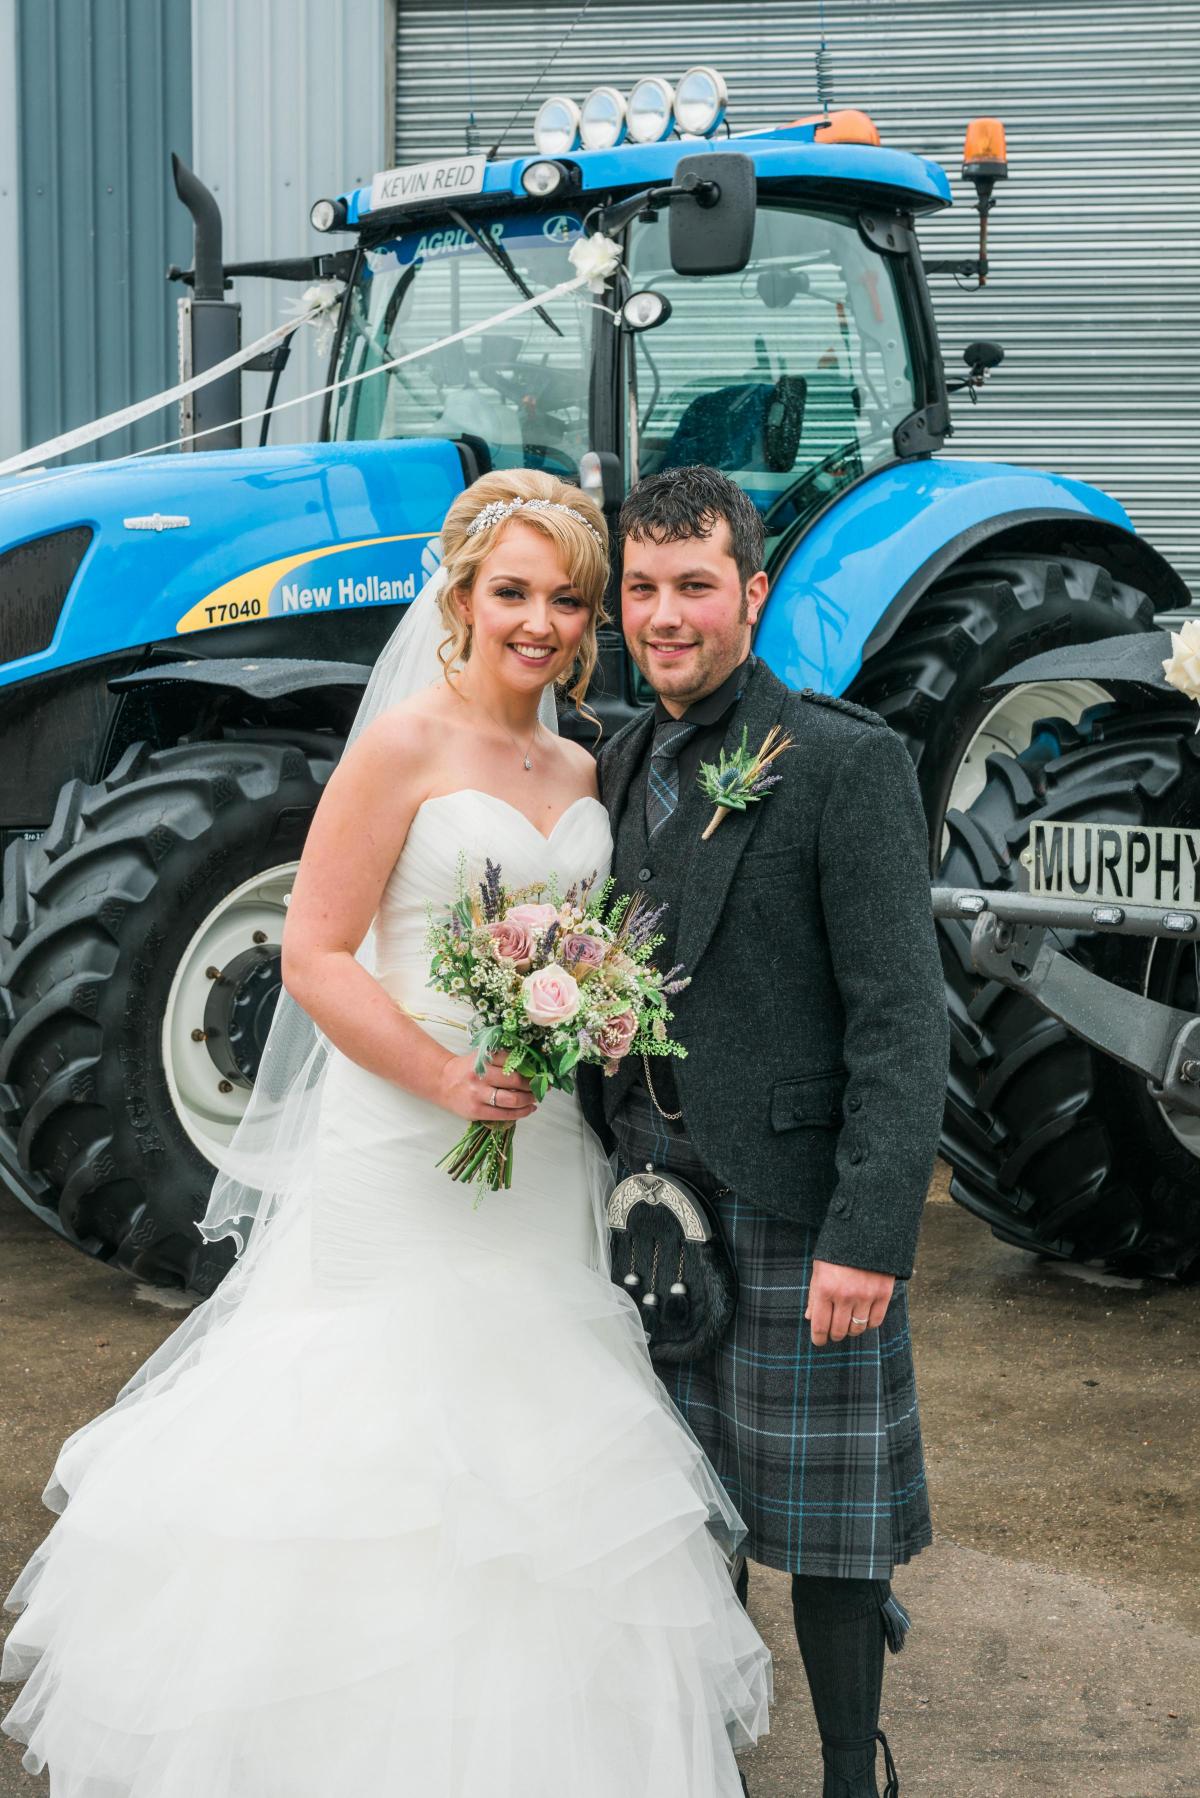 Emma Murphy, Longside Aberdeen, married Kevin Reid,  Turriff, Aberdeenshire, at Mains of Kinmundy Farm, Longside, Peterhead Photo: James Kelly


